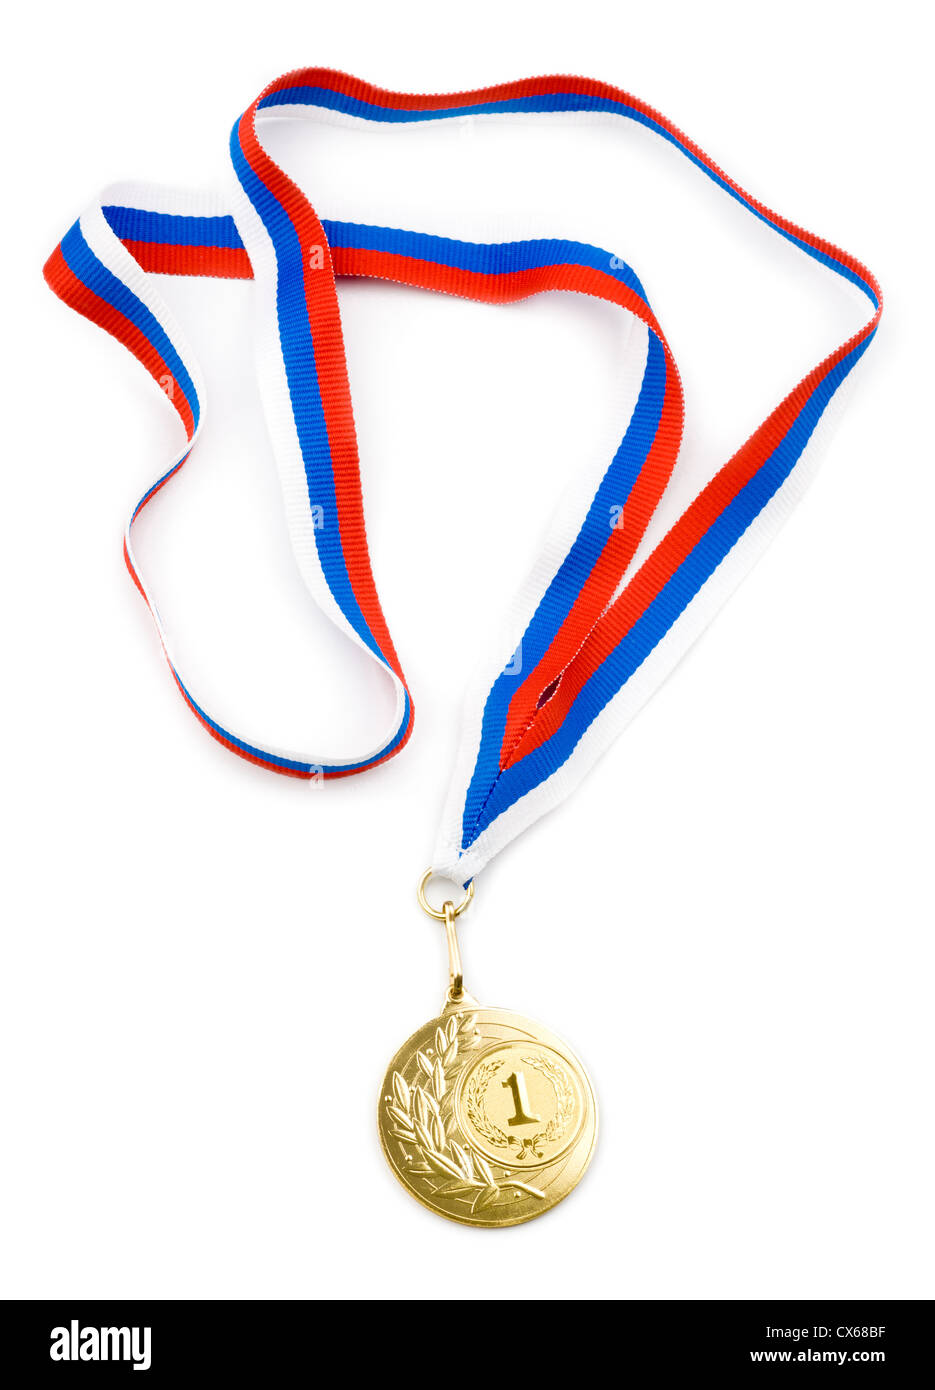 Médaille d'or avec ruban isolé Banque D'Images